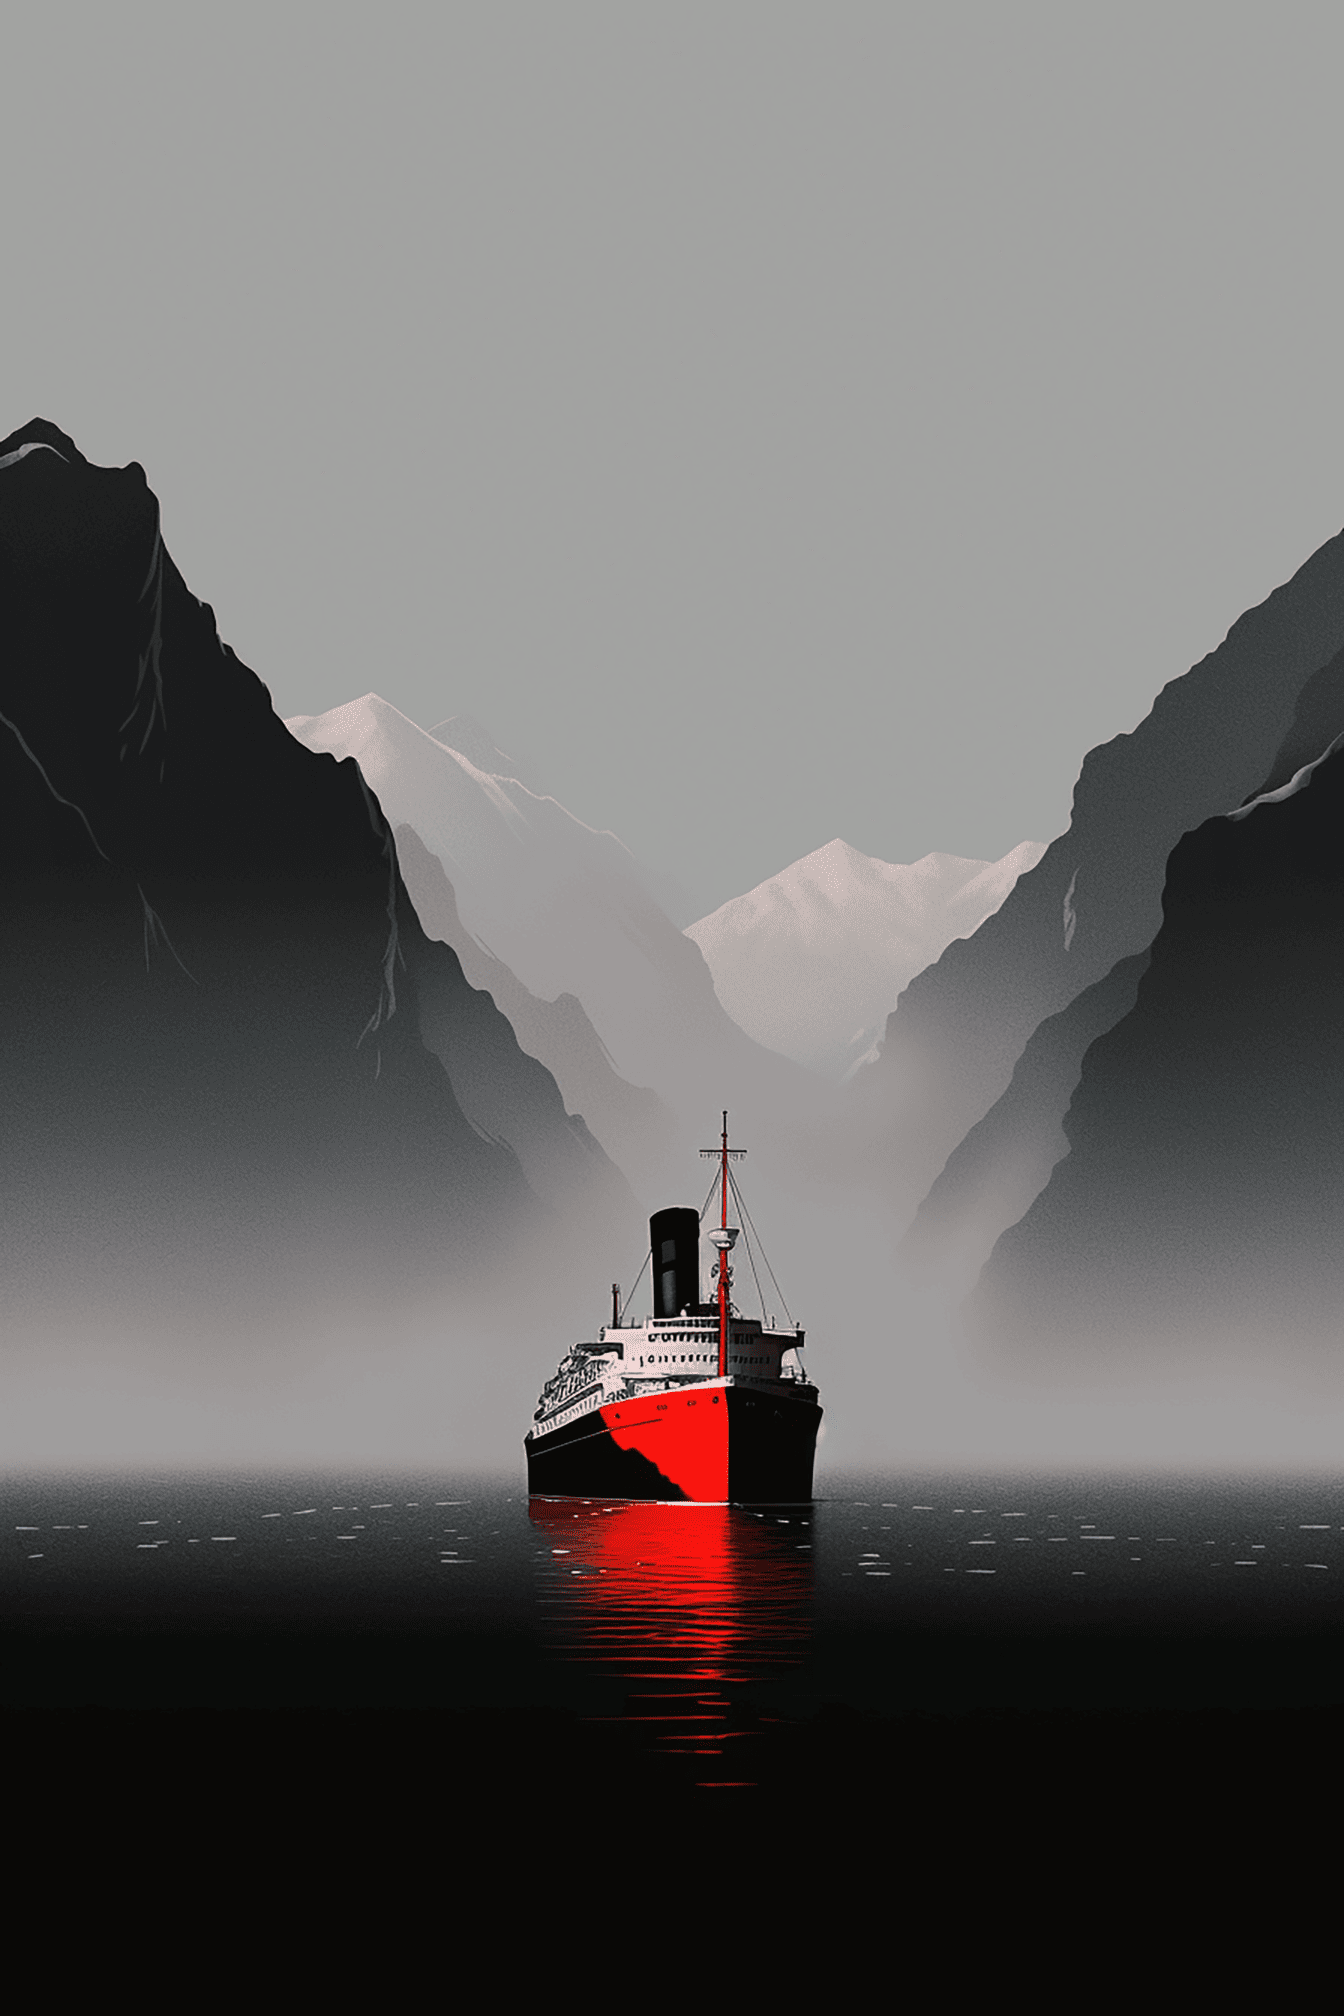 Векторная иллюстрация круизного лайнера в бухте на фоне гор